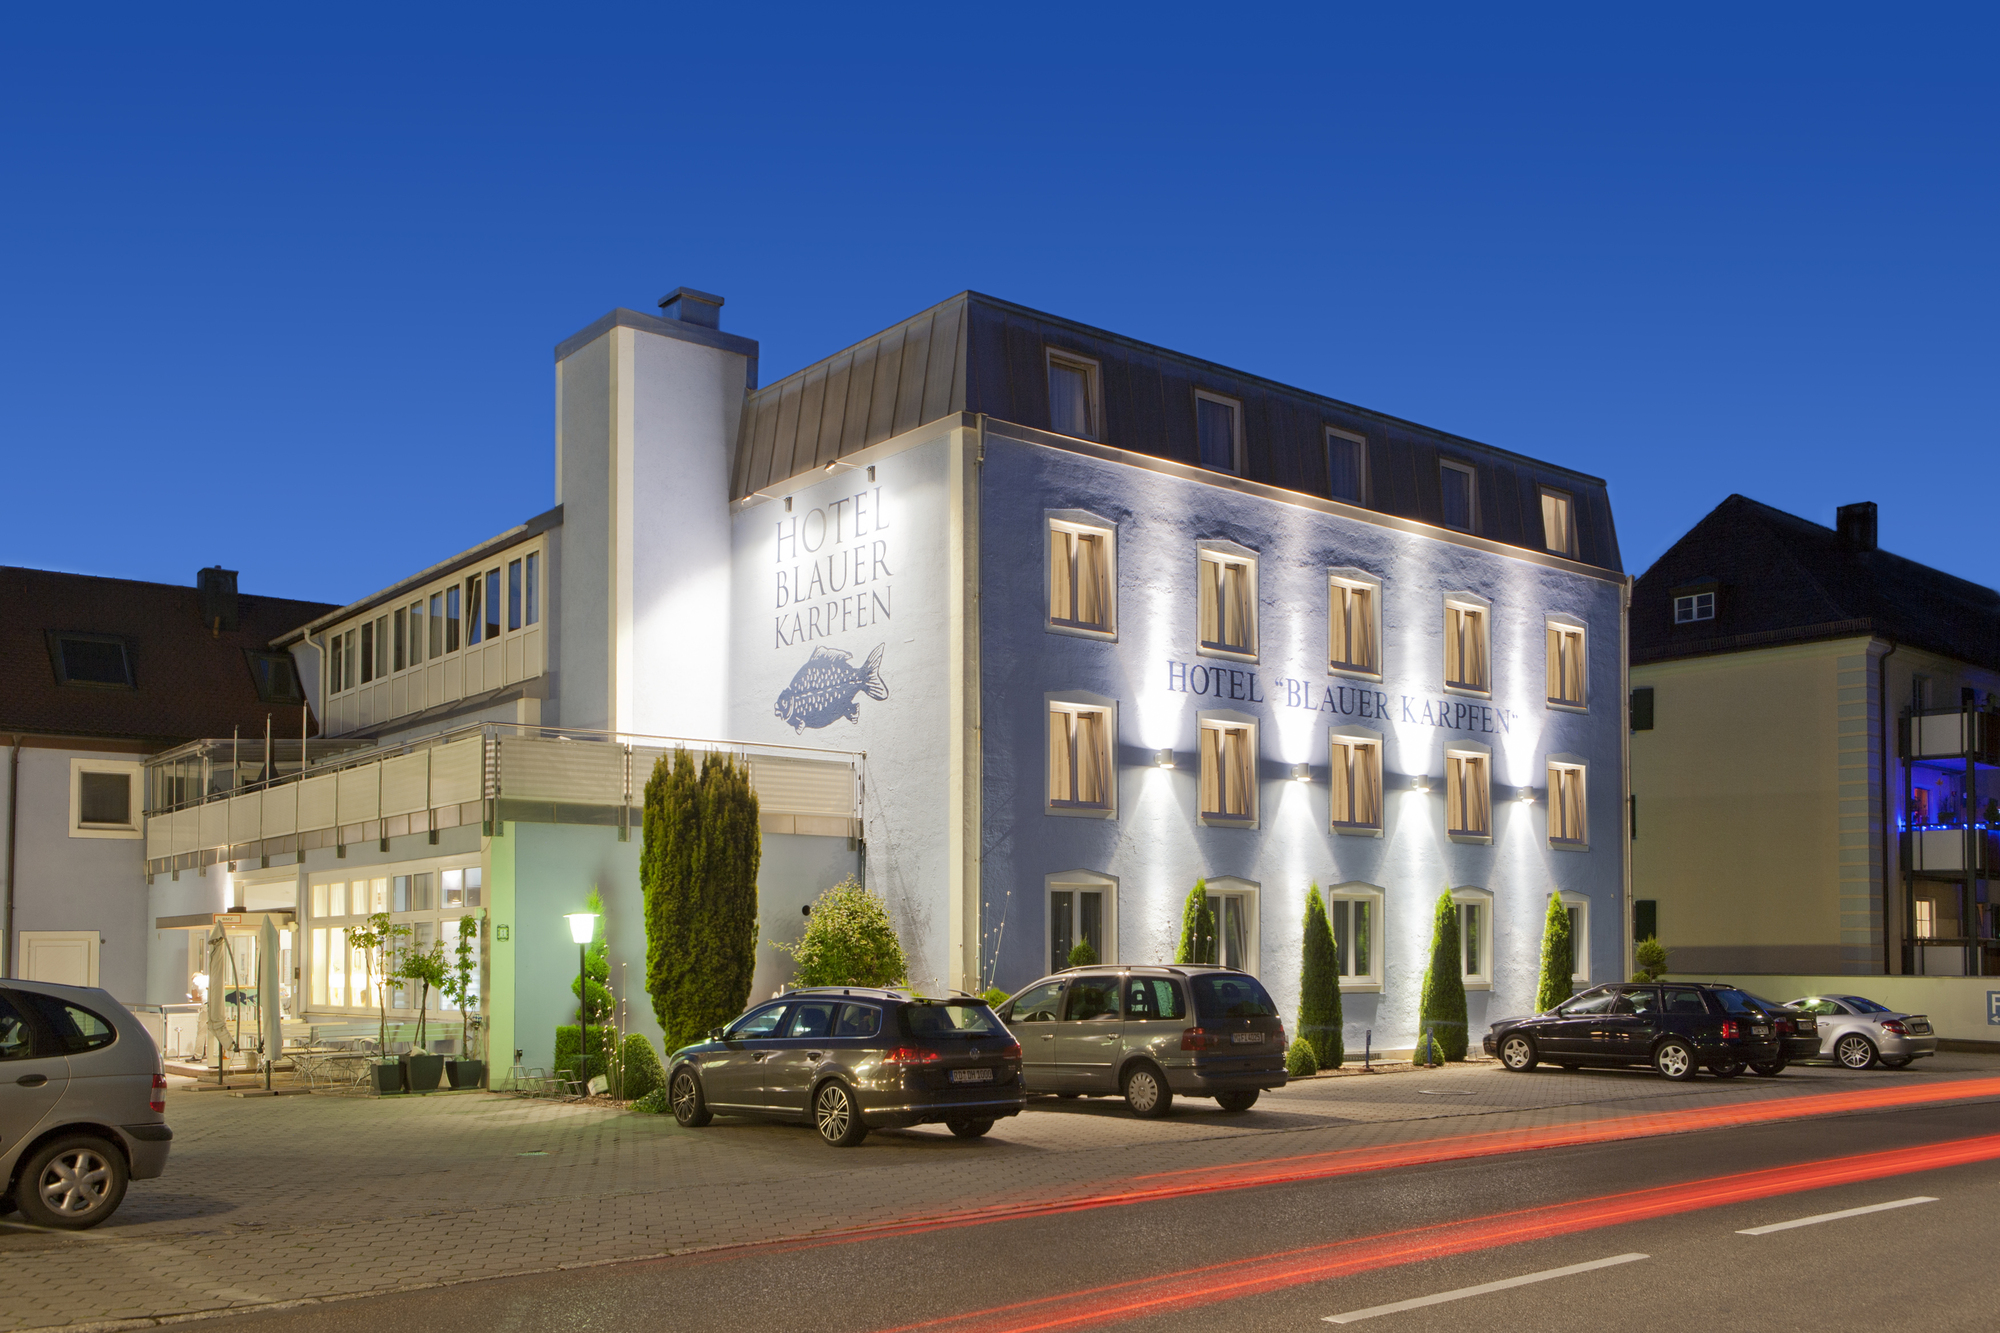 Das Hotel blauer Karpfen,  Fahrradhotel in Oberschleißheim bei München